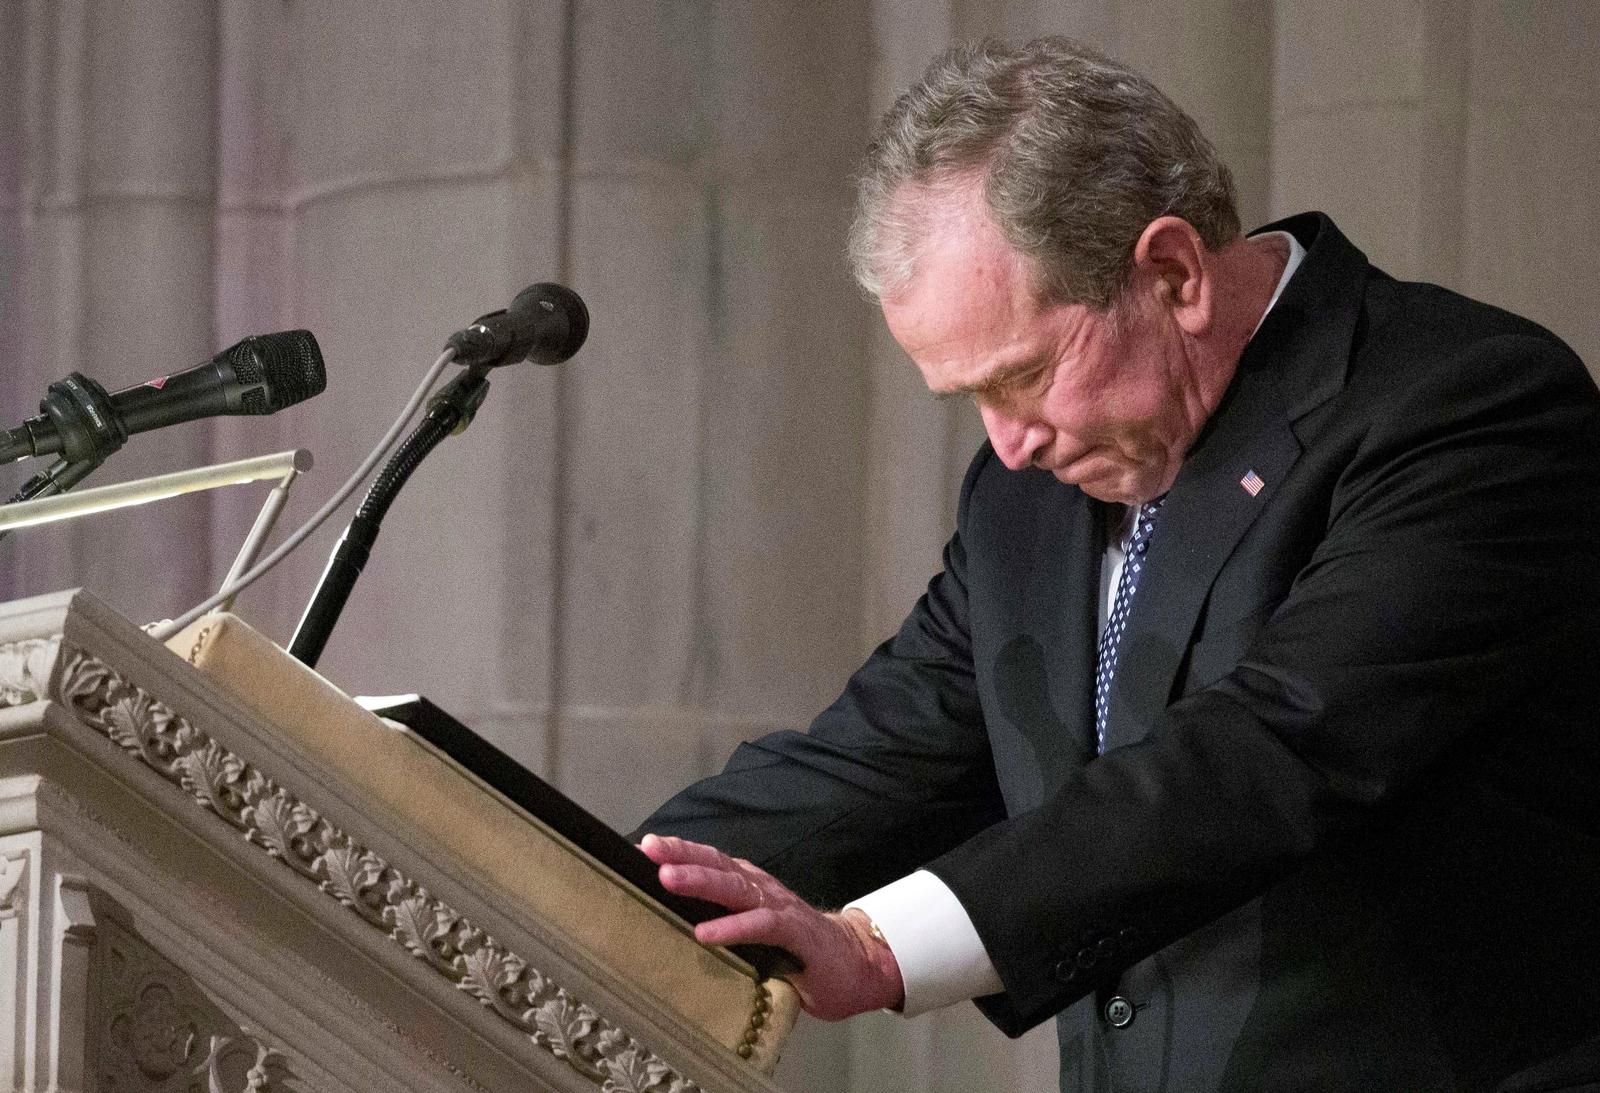  Despedida. El expresidente GeorgeW. Bush tuvo que contener la emoción durante su discurso en el funeral de su padre. (AP)